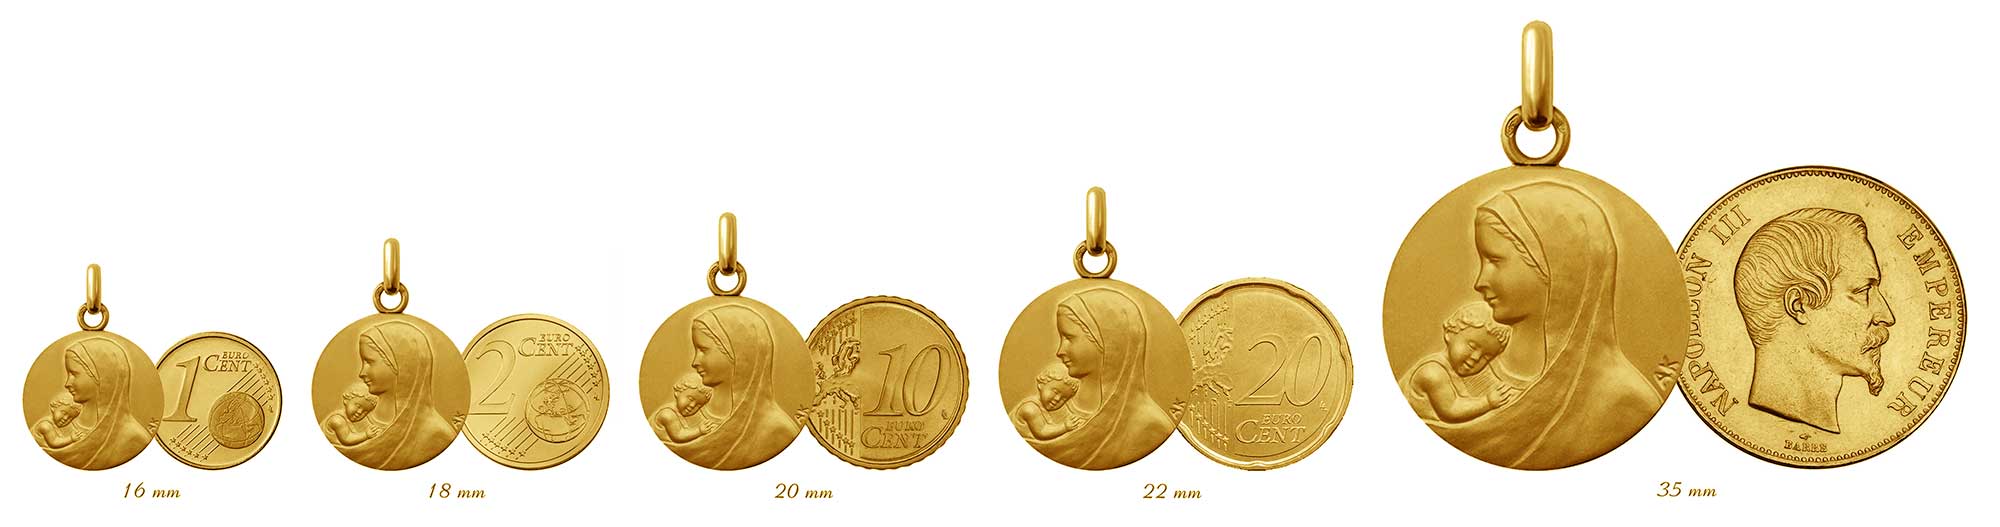 Médailles de baptême et leurs équivalent de taille en monnaie